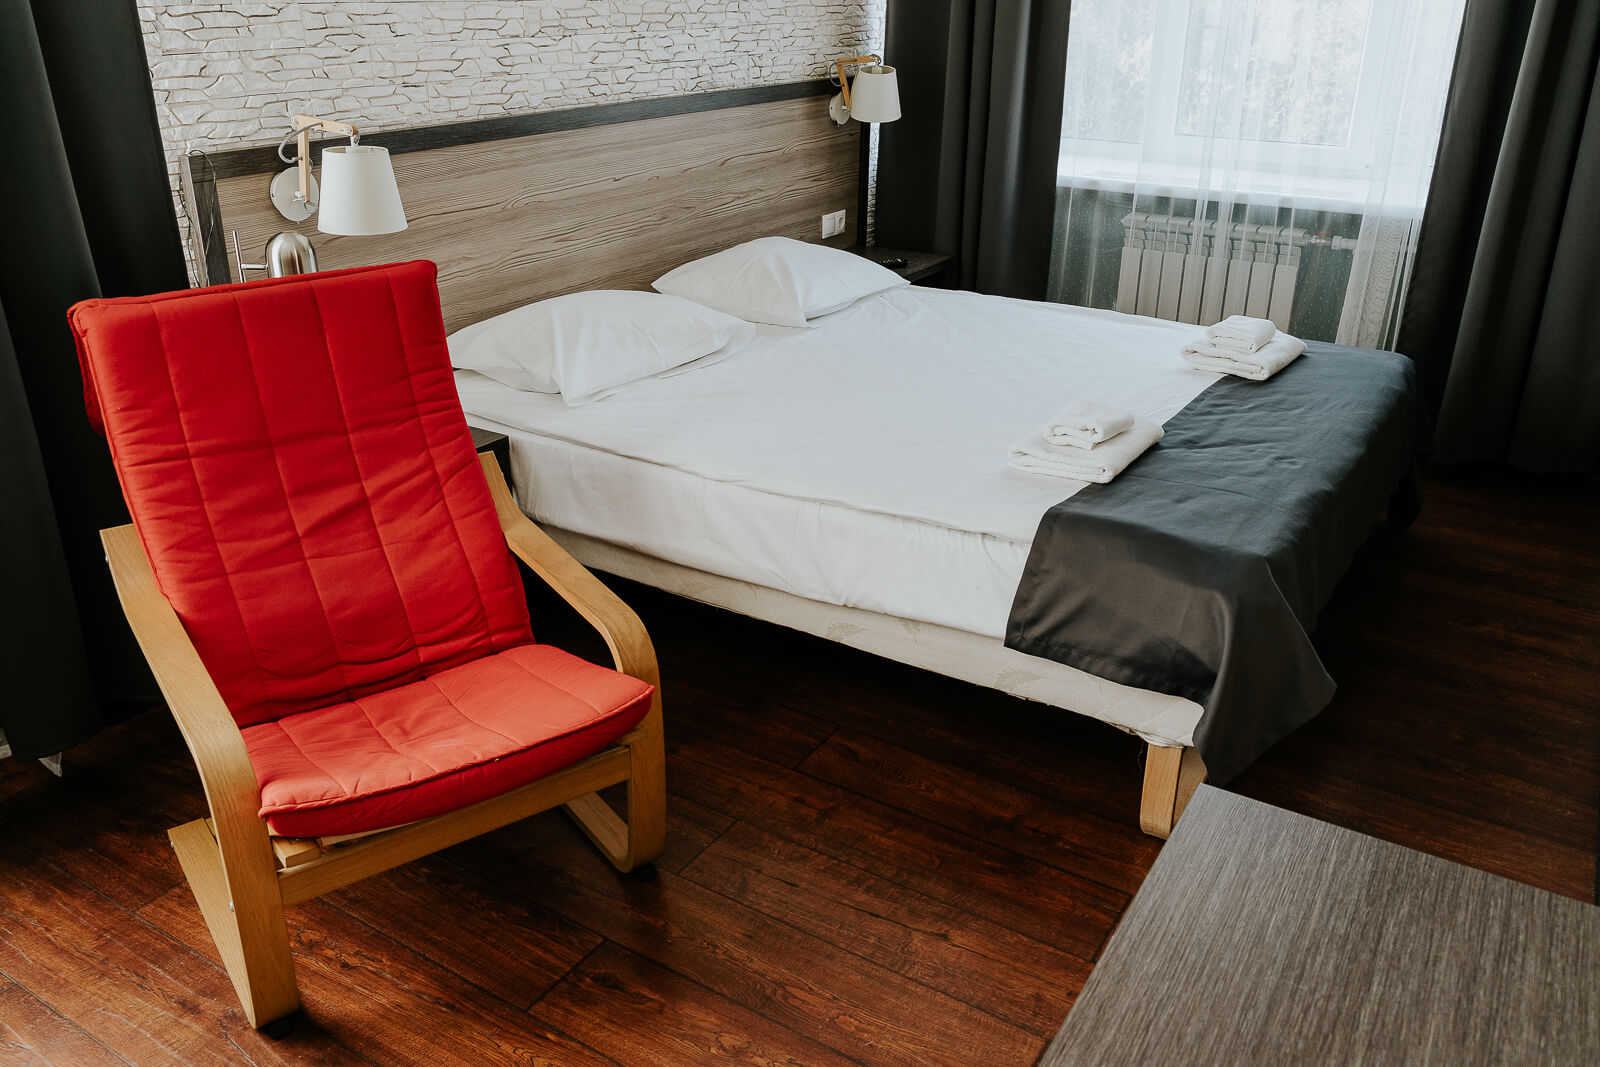 Застеленная кровать и кресло с красными подушками.